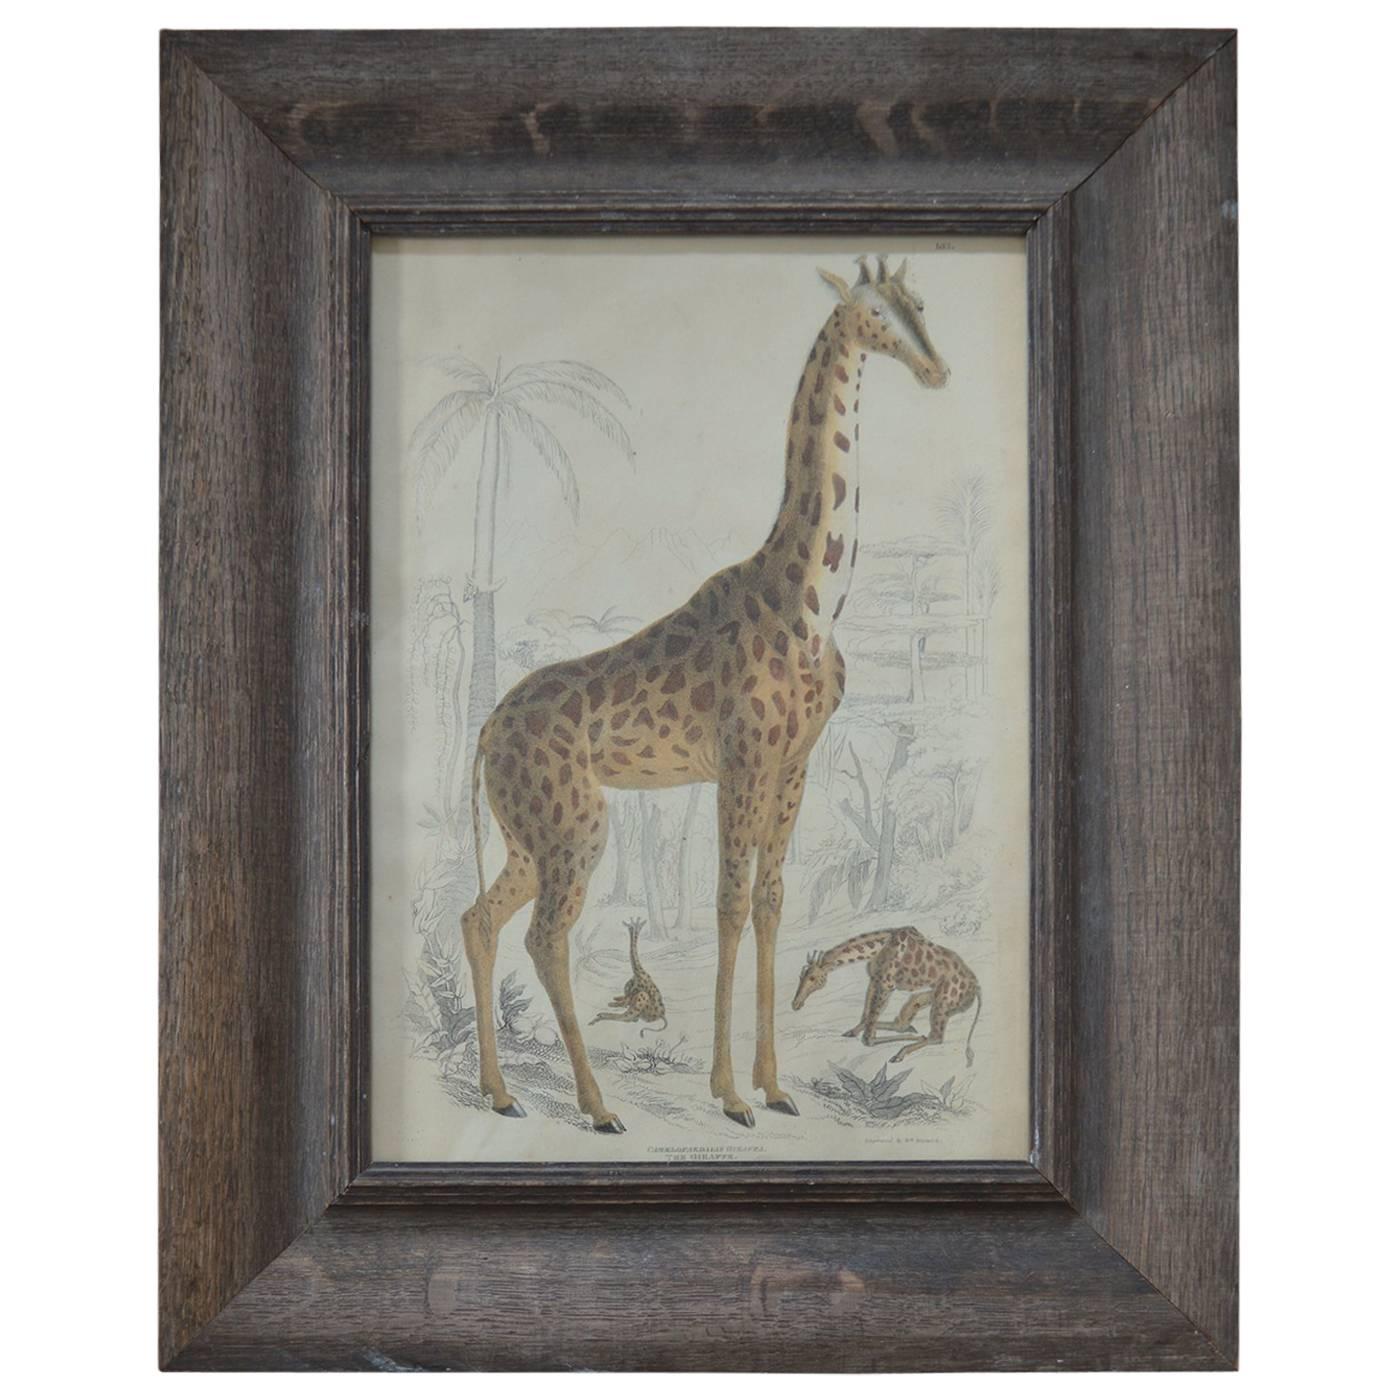 Original Antique Print of a Giraffe, 1835